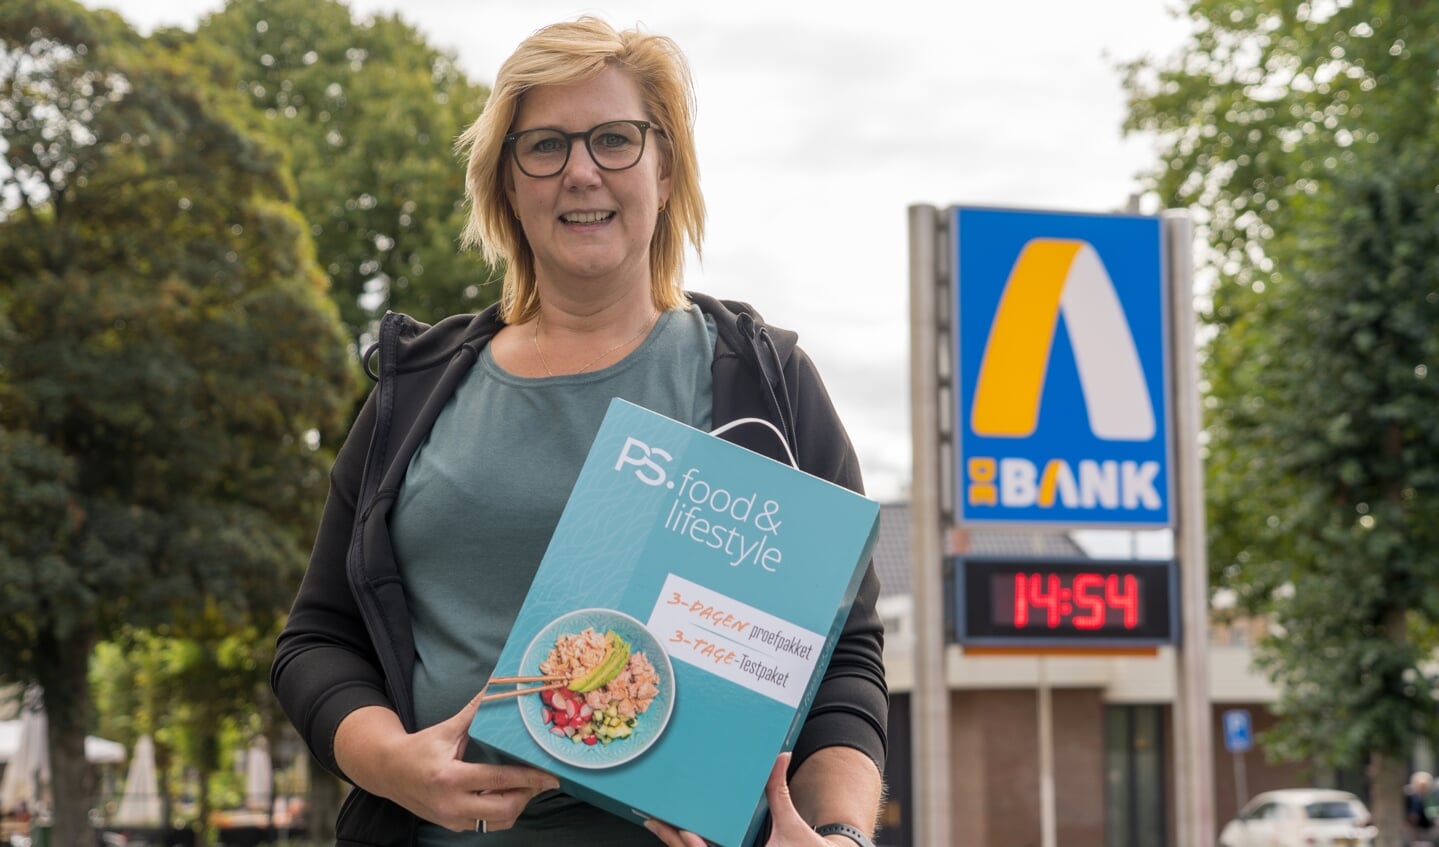 Allette van Bruggen met een proefpakket van PS Food & Lifestyle voor haar nieuwe kantoor in De Bank in Burgum.